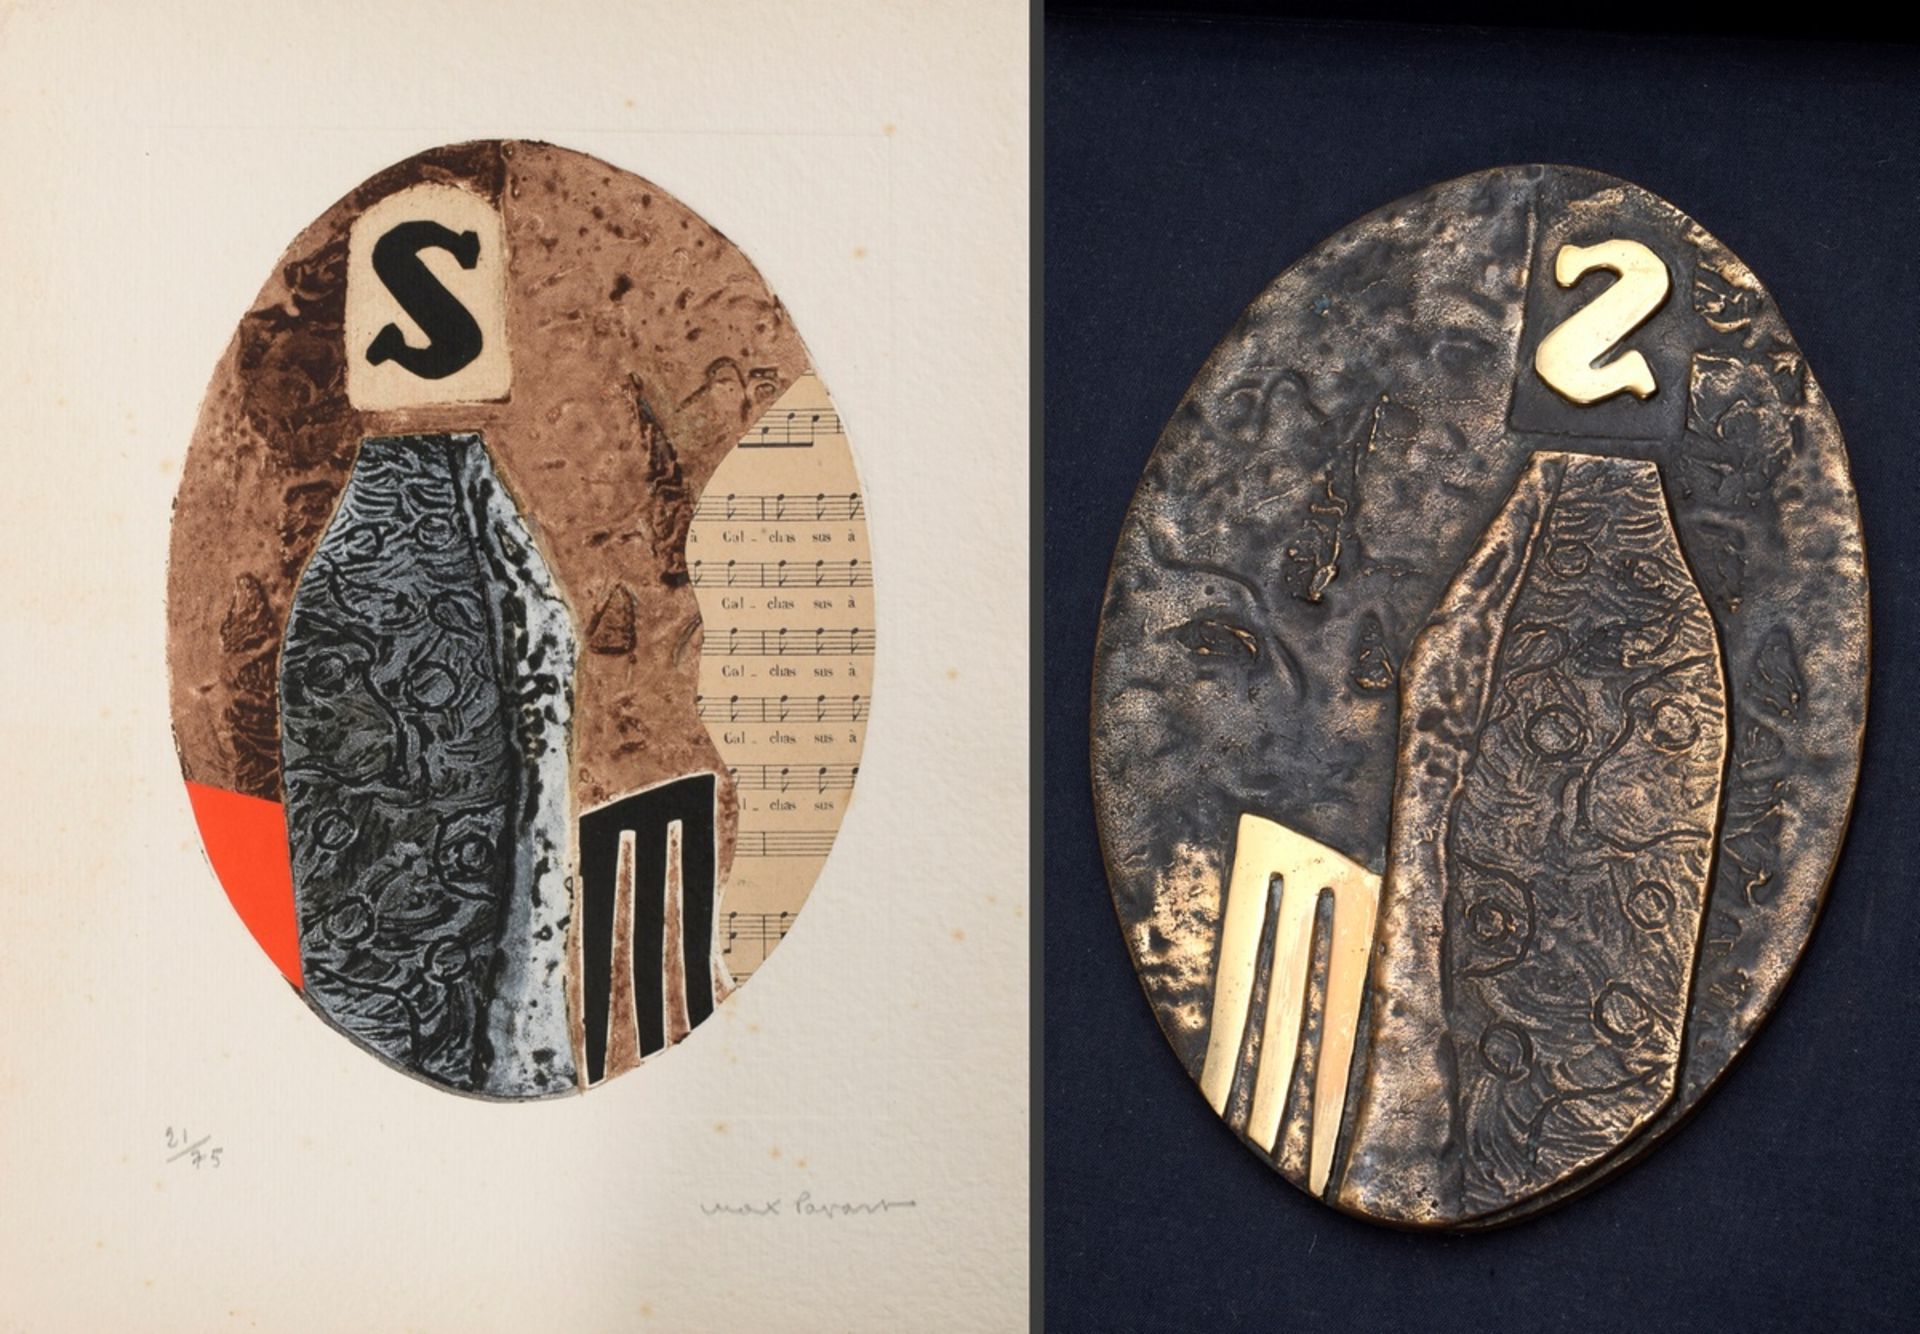 Papart, Max (1911-1994) "Pavane" 1977, Bronze und Radierung/Collage, 21/75, u. sign./num. BM 33x26c